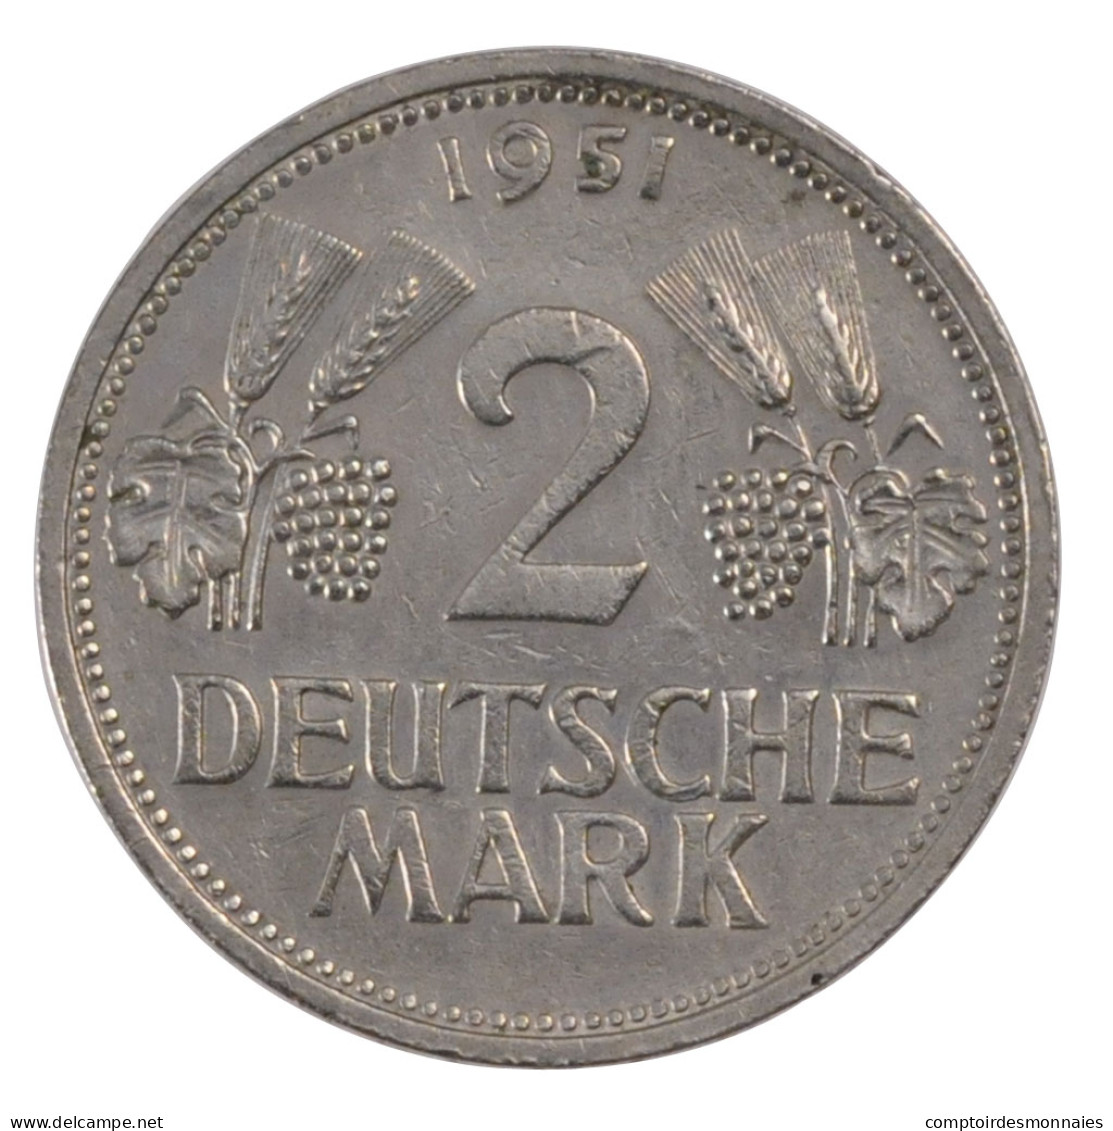 Monnaie, République Fédérale Allemande, 2 Mark, 1951, Stuttgart, TTB - 2 Mark